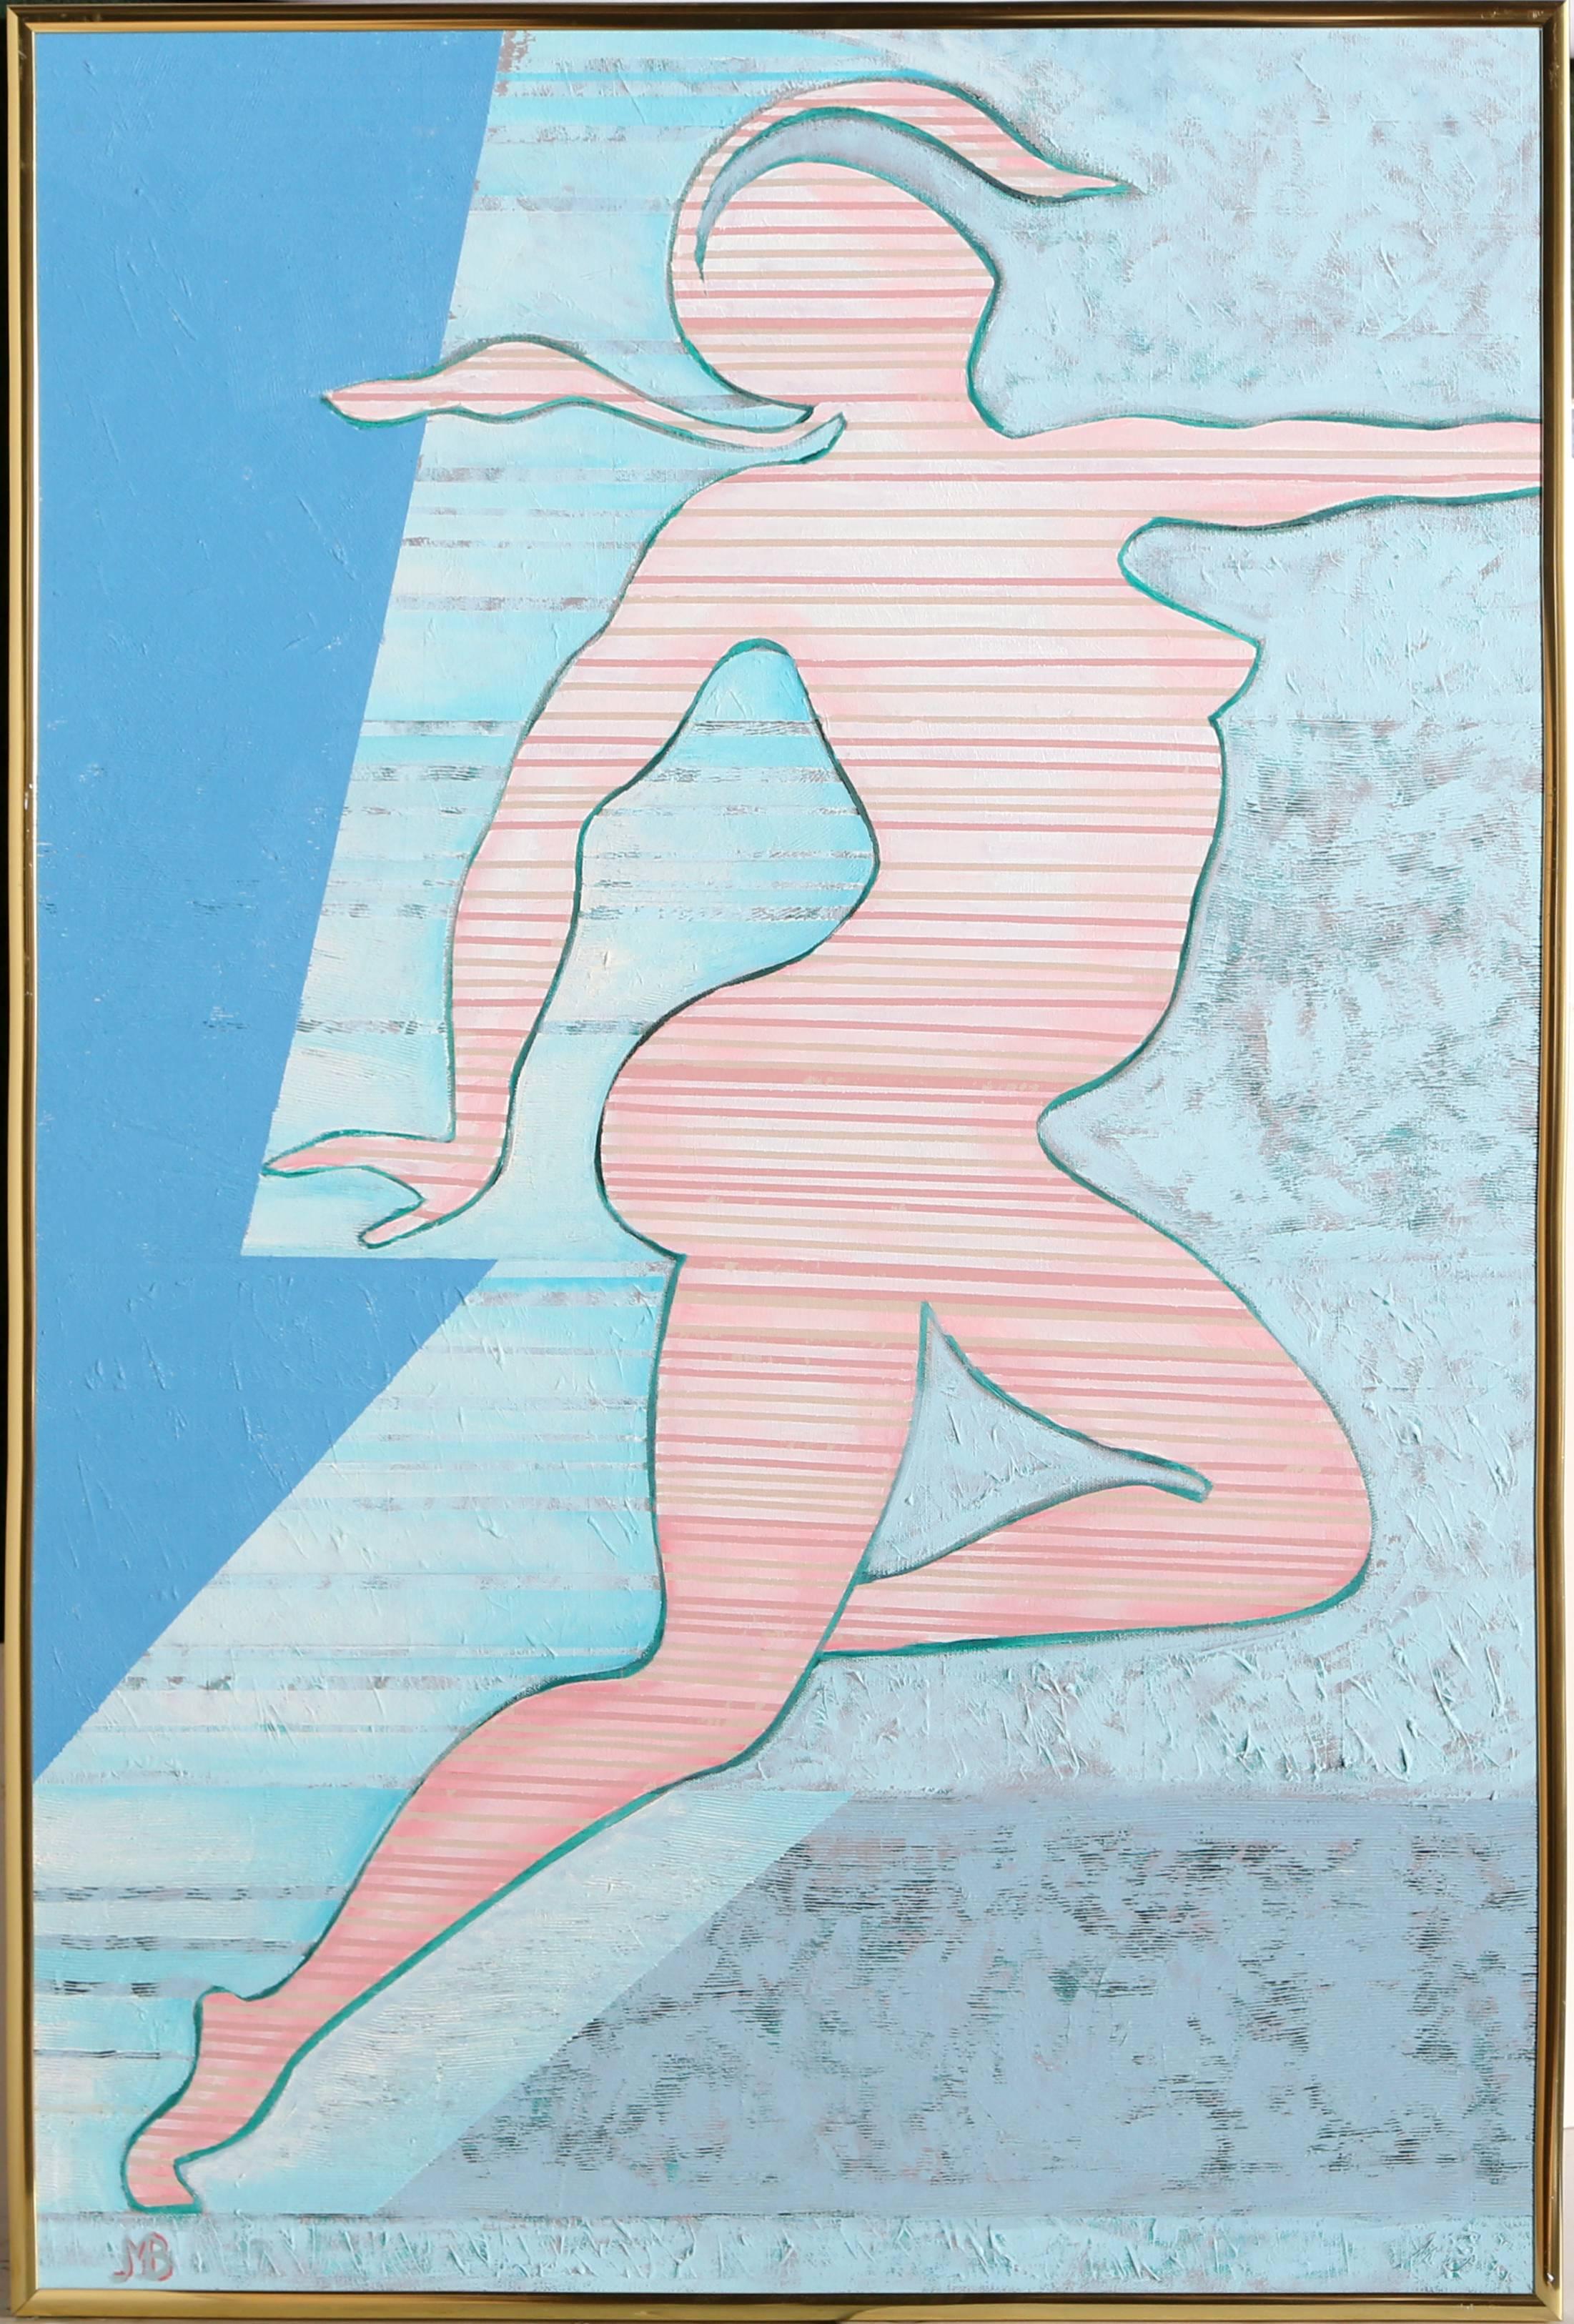 Artistics : Martin Barooshian, Américain (1929 - )
Titre : Flygirl No. 3
Année : 1996
Moyen d'expression : Acrylique sur toile, signée
Taille : 36 in. x 24 in. (91.44 cm x 60.96 cm)
Taille du cadre : 36.5 x 24.5 pouces